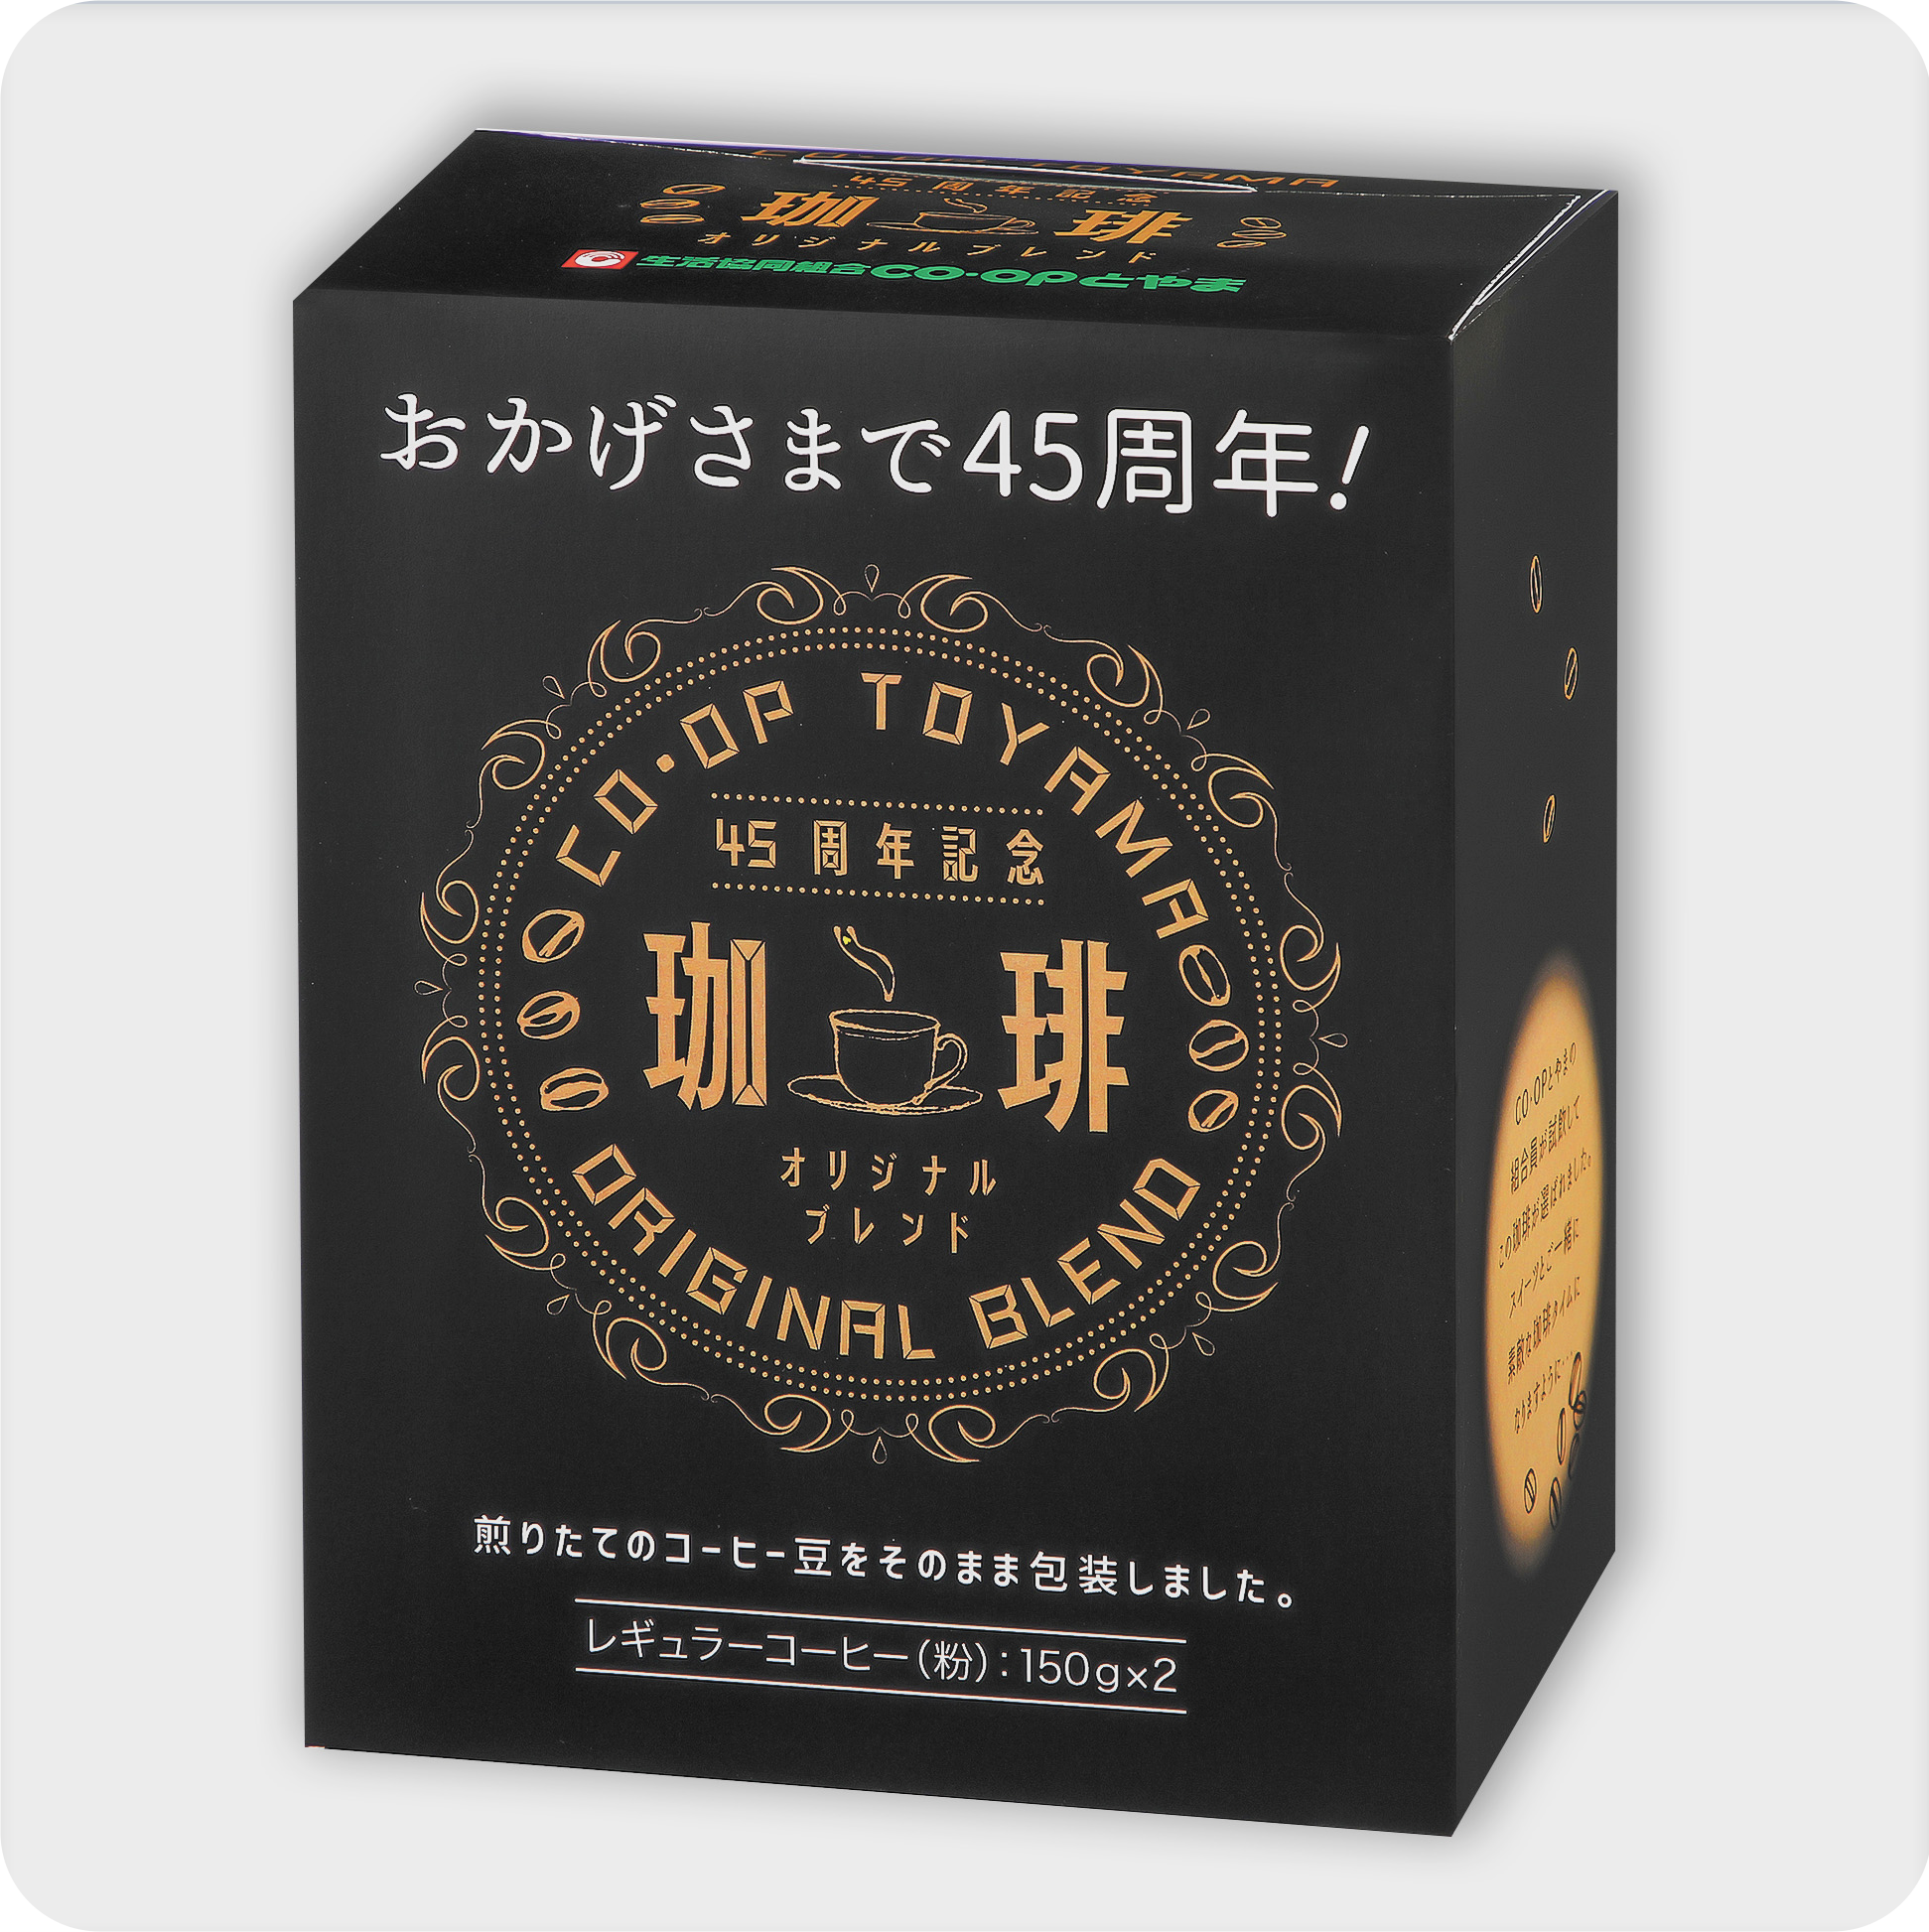 コープ富山さんオリジナルコーヒーのパッケージデザイン